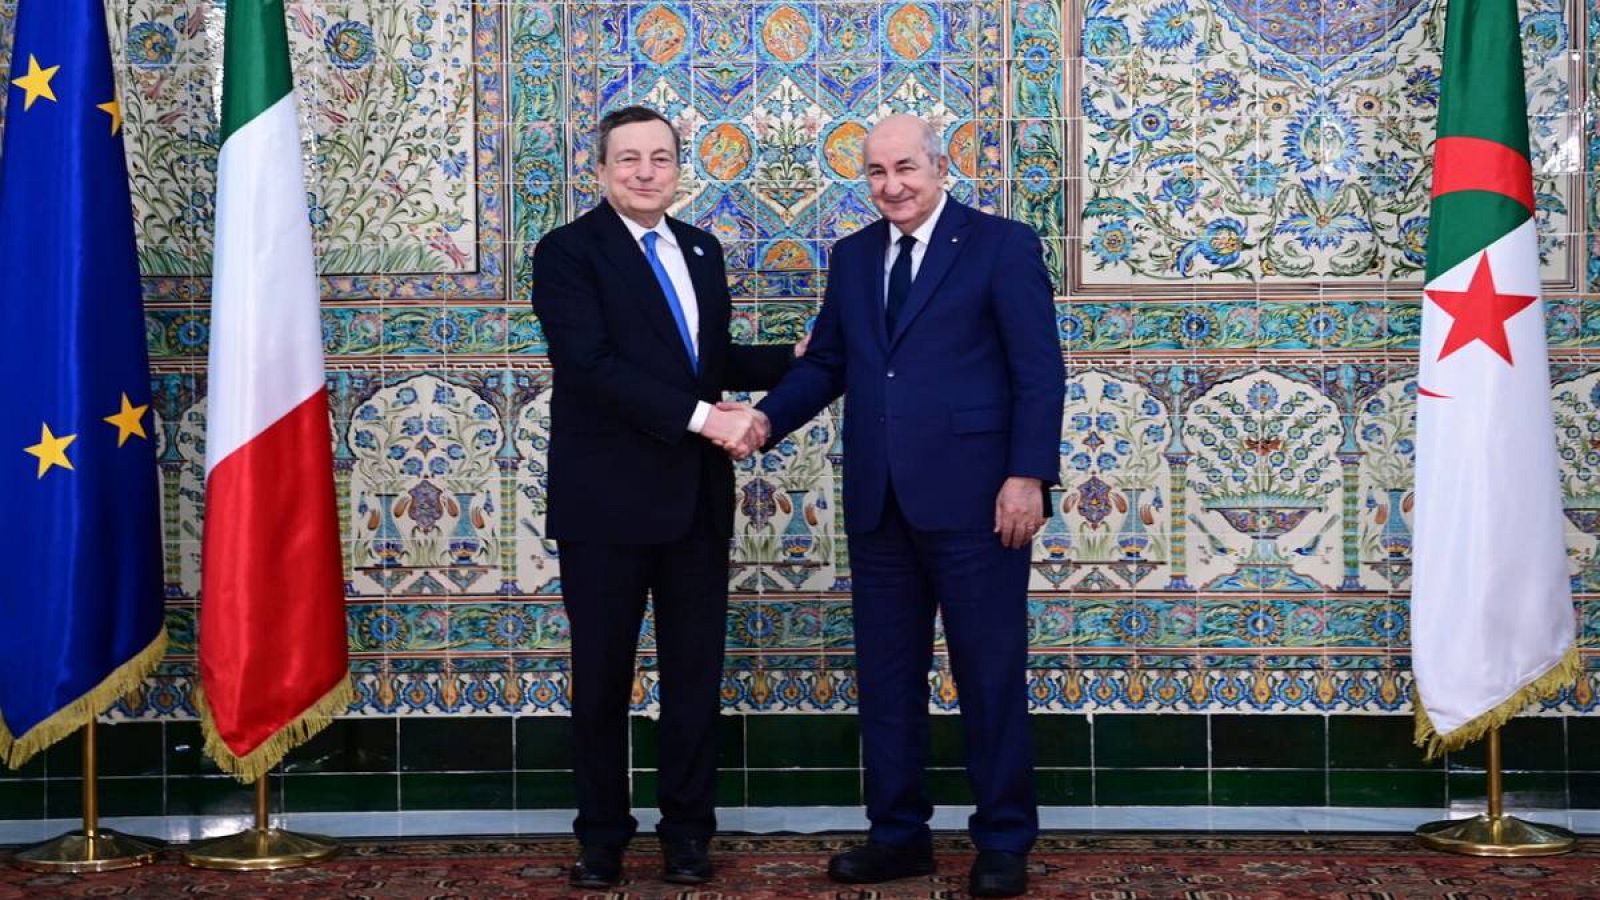 El presidente argelino Abdelmadjid Tebboune (derecha) estrechando la mano del primer ministro italiano Mario Draghi (izquierda) en el palacio de El Mouradia en Argel, Argelia.